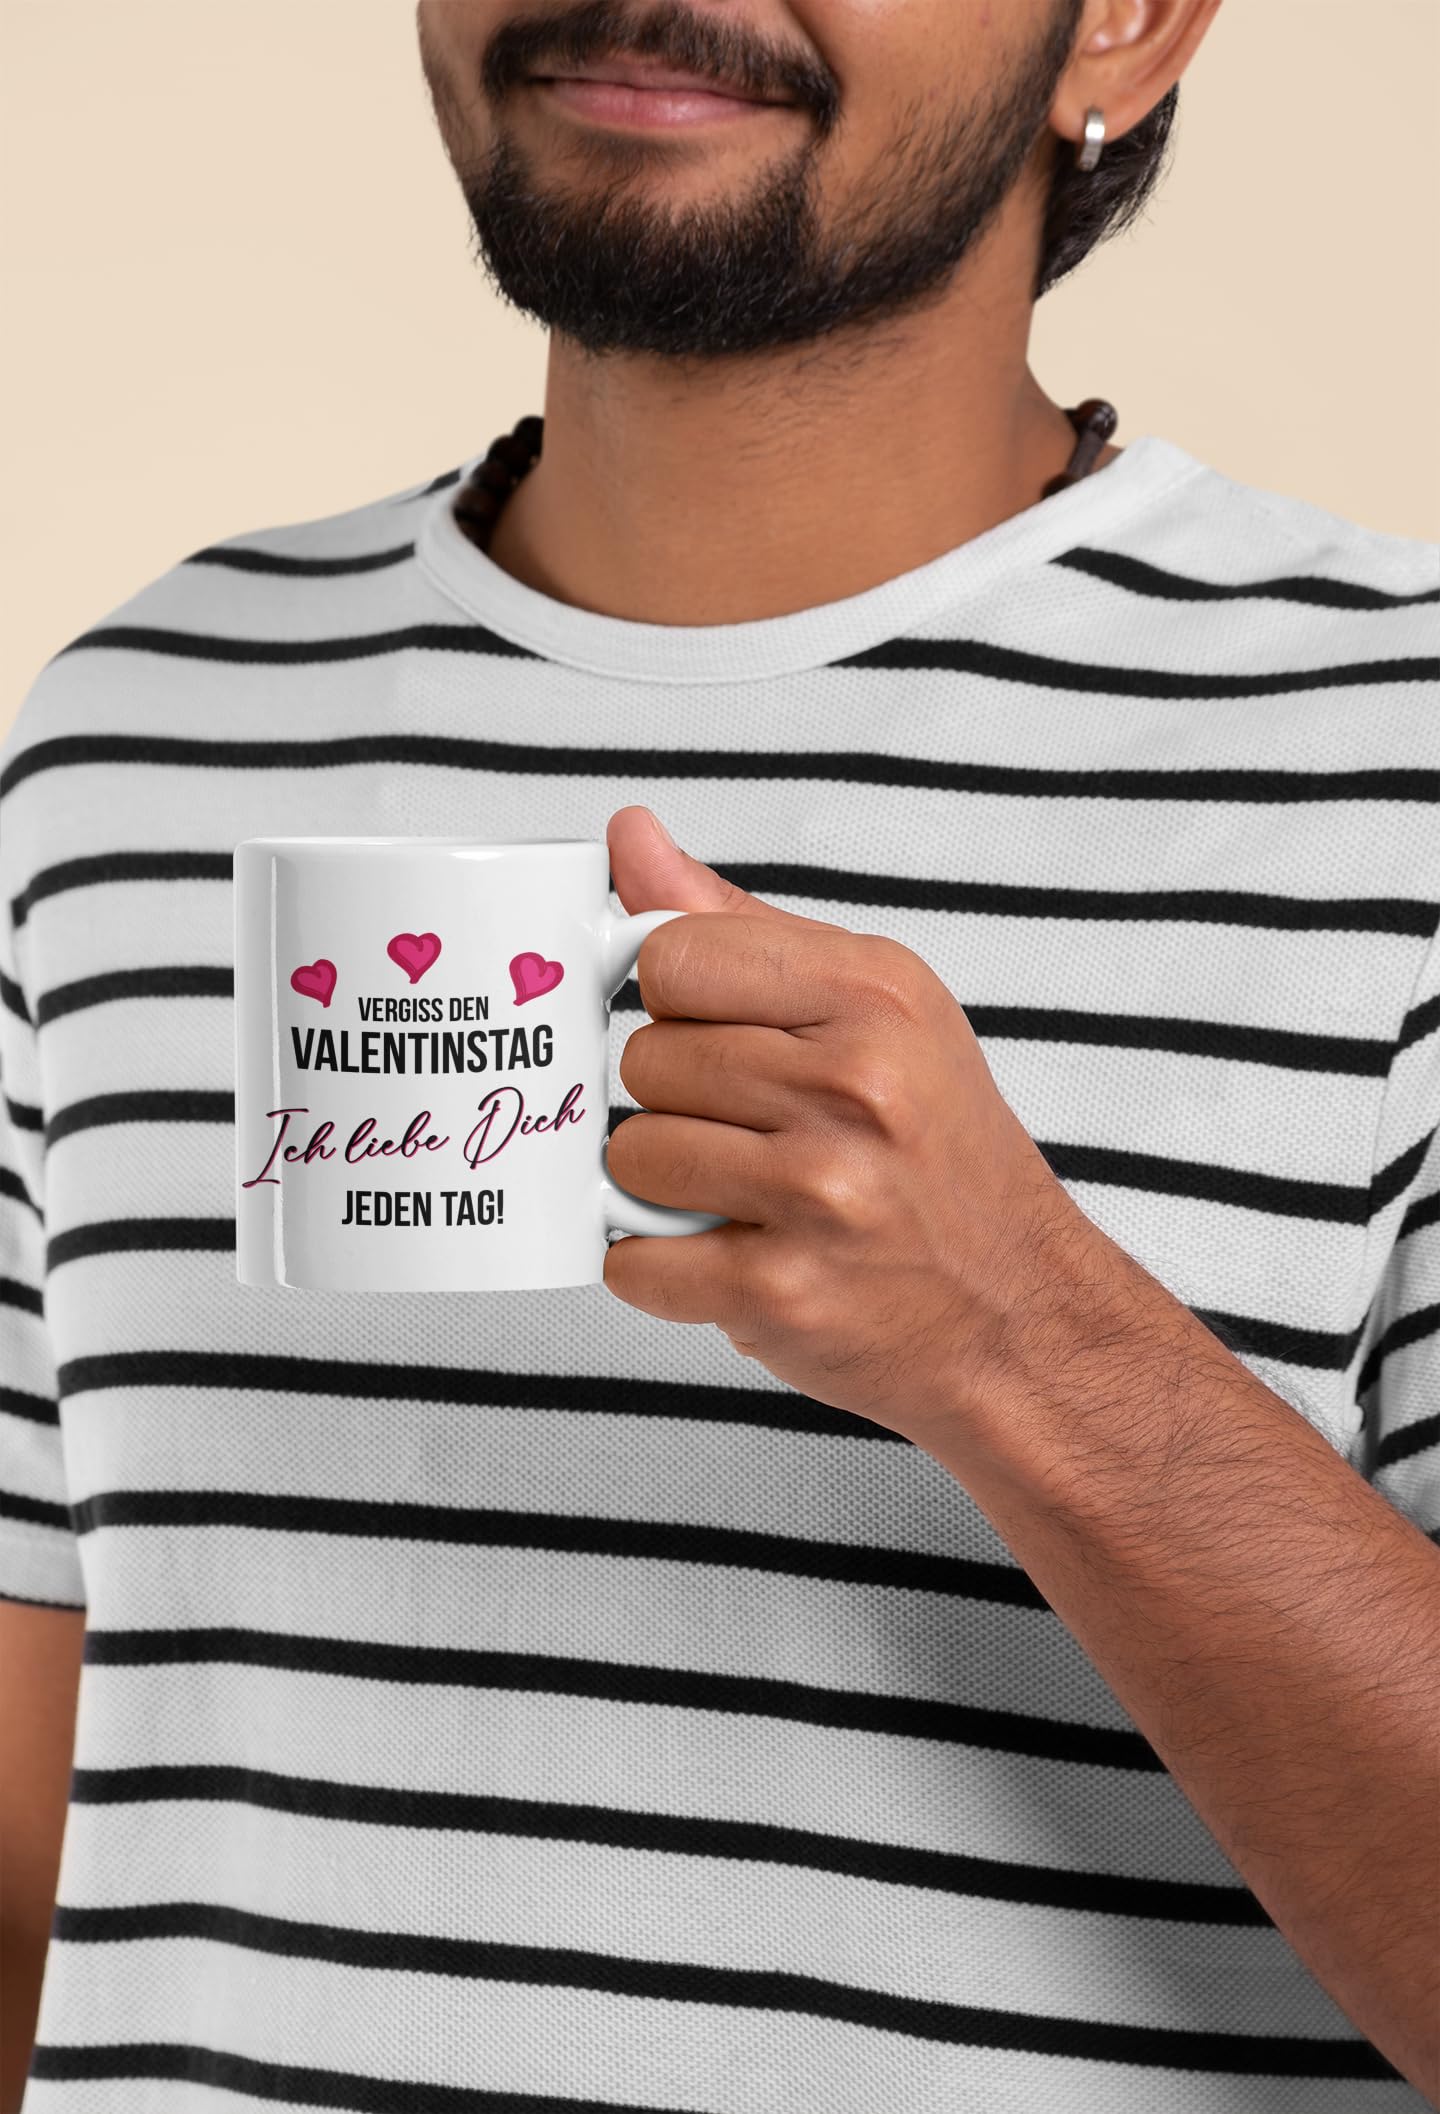 Tasse personalisiert mit Namen, Vergiss den Valentinstag Wunschname ich liebe dich jeden Tag, Valentinstagsgeschenk für Sie und Ihn, Kaffeetasse, Keramiktasse